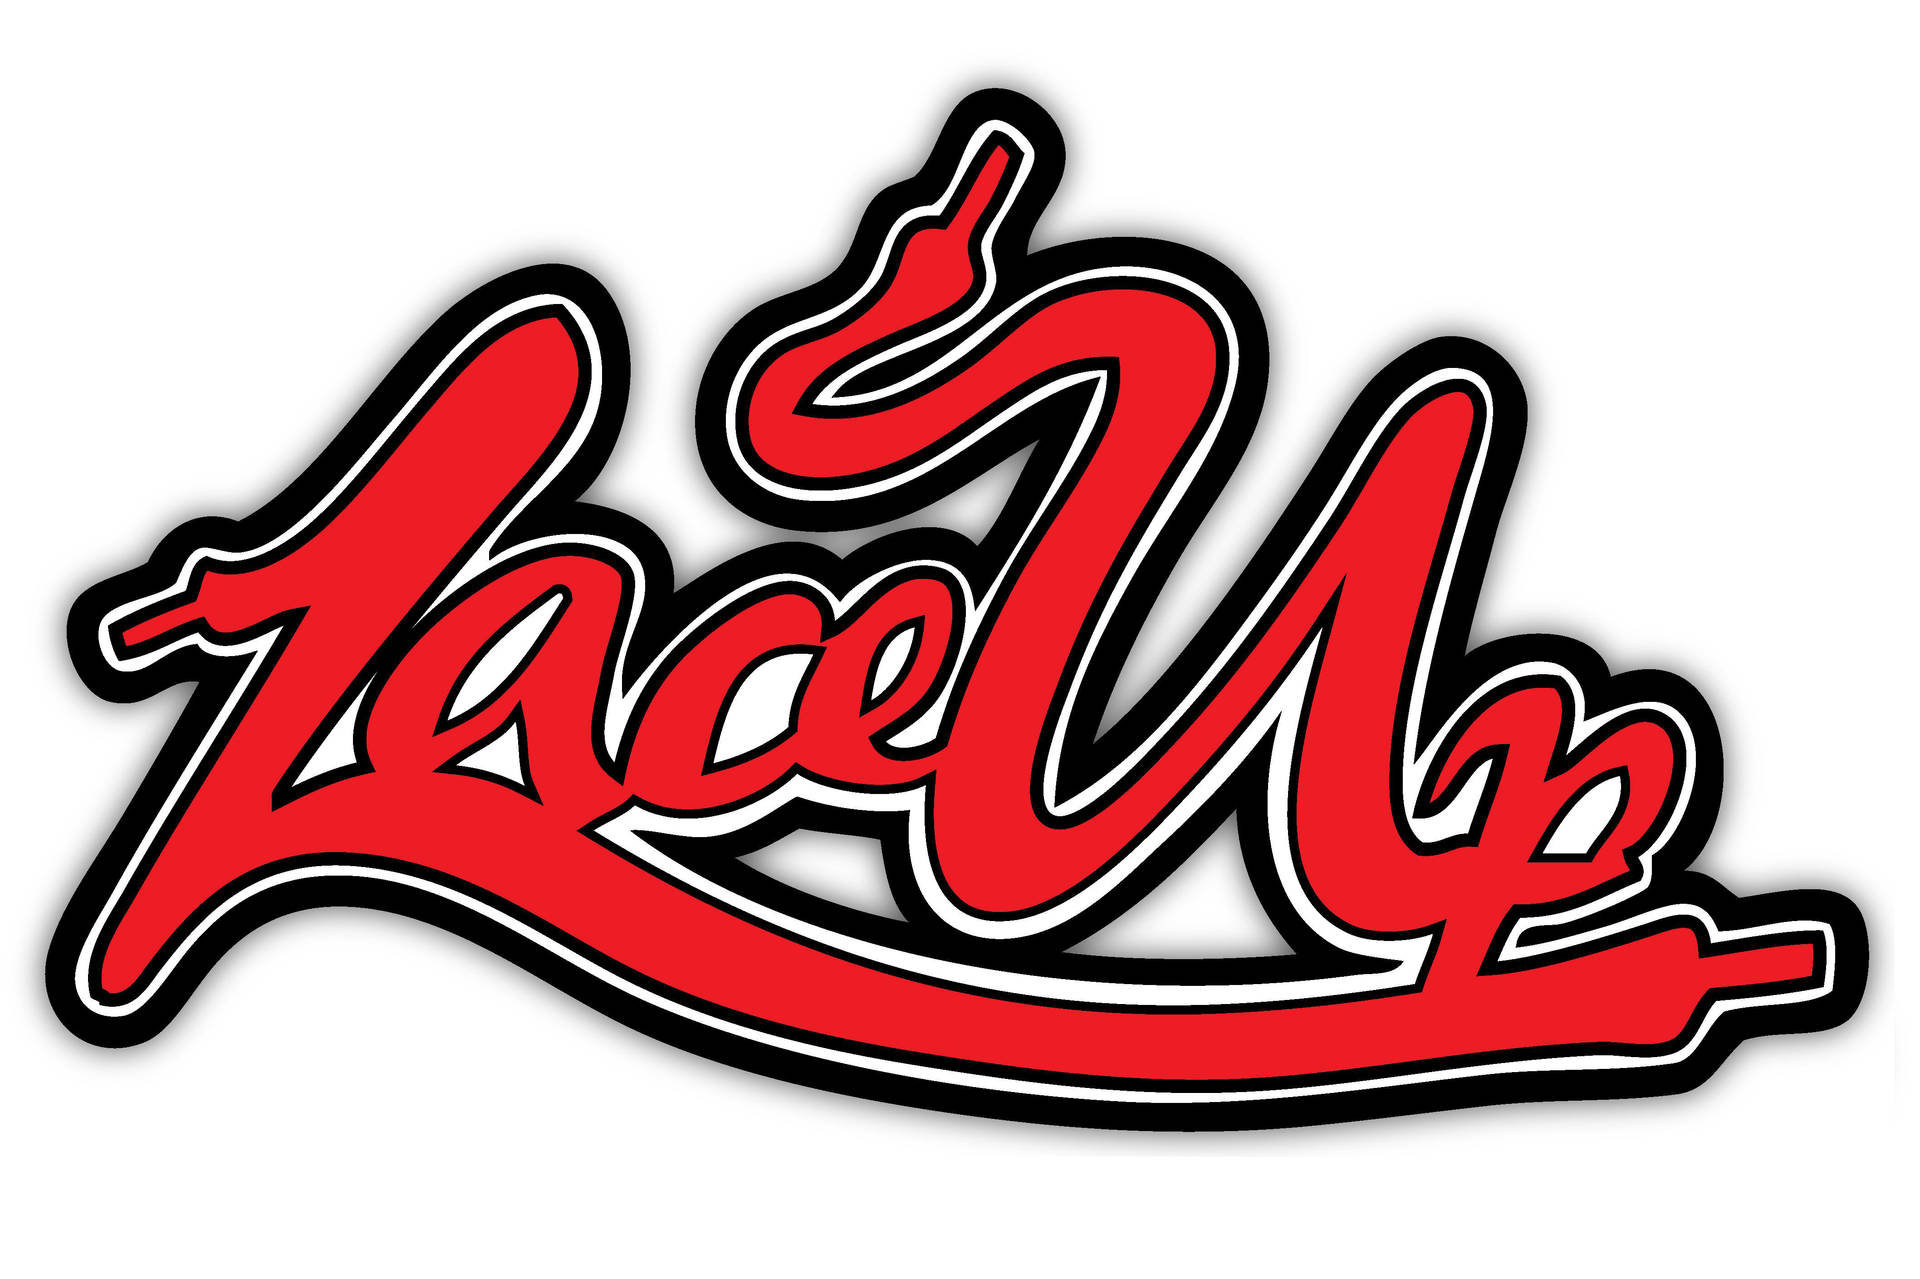 Lace Up 2010 Logo Background